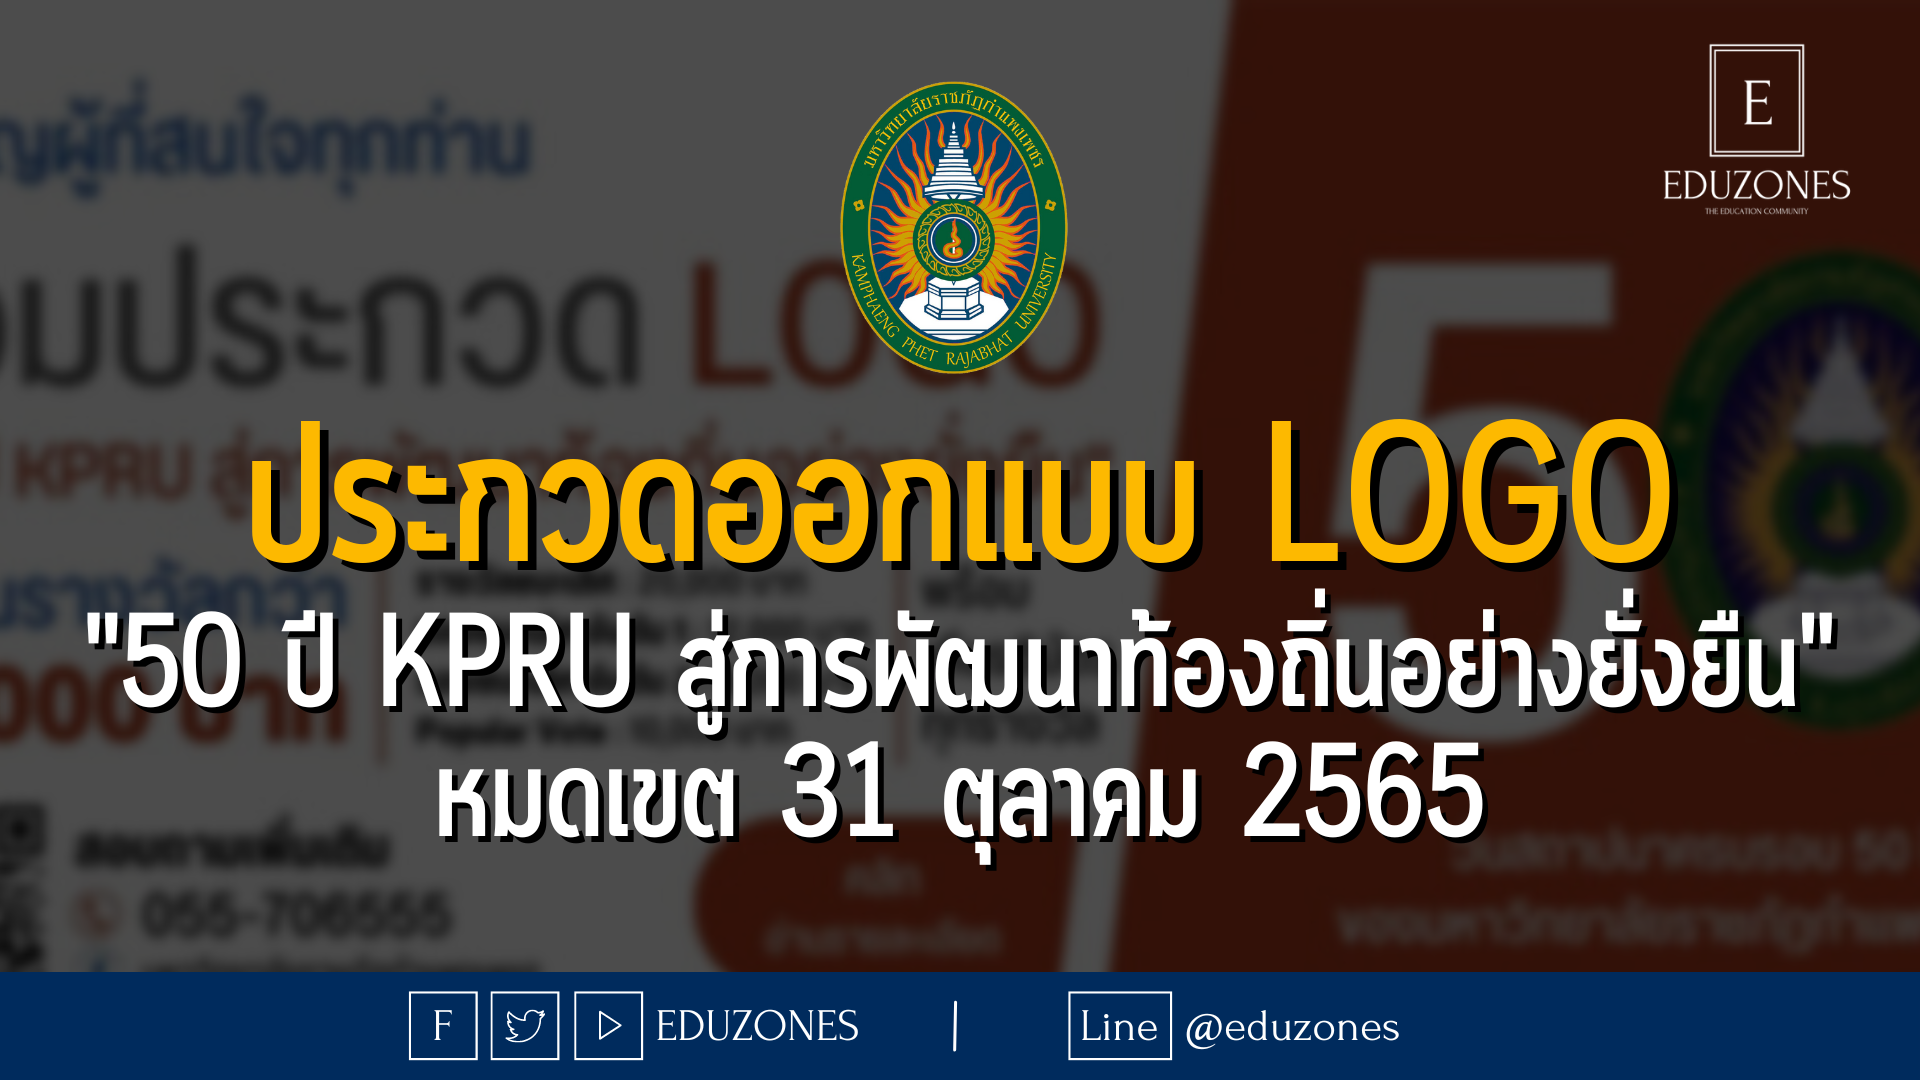 ประกวดออกแบบ Logo "50 ปี KPRU สู่การพัฒนาท้องถิ่นอย่างยั่งยืน" หมดเขต 31 ตุลาคม 2565